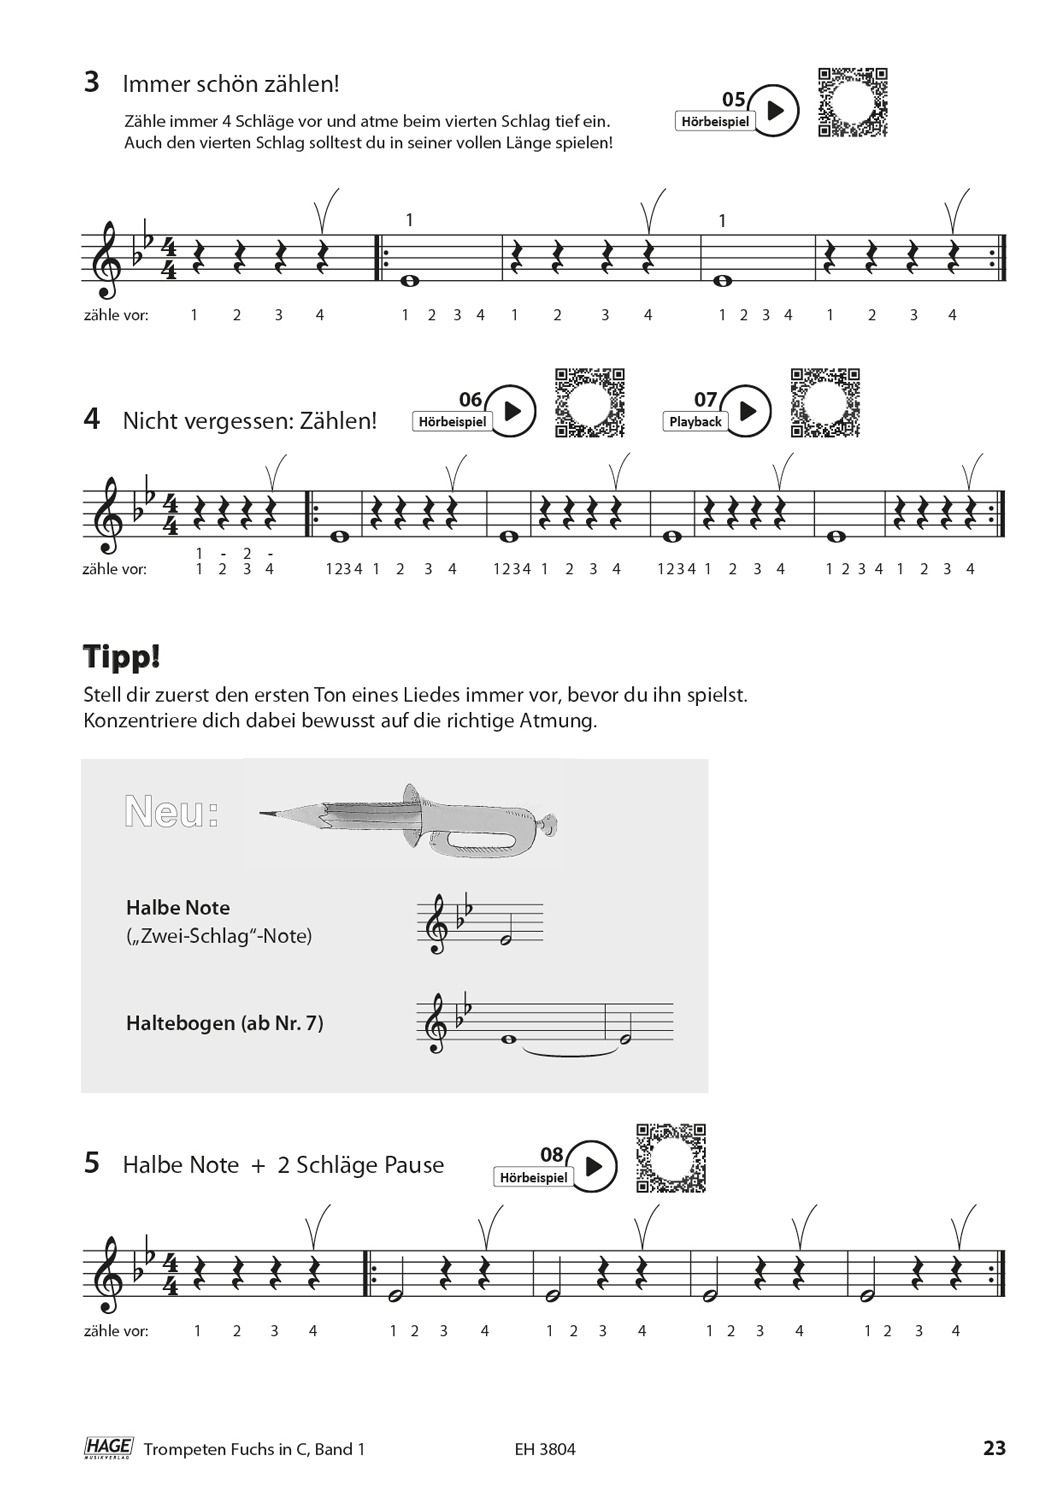 Trompeten Fuchs Band 1 in C für Posaunenchor Seiten 6